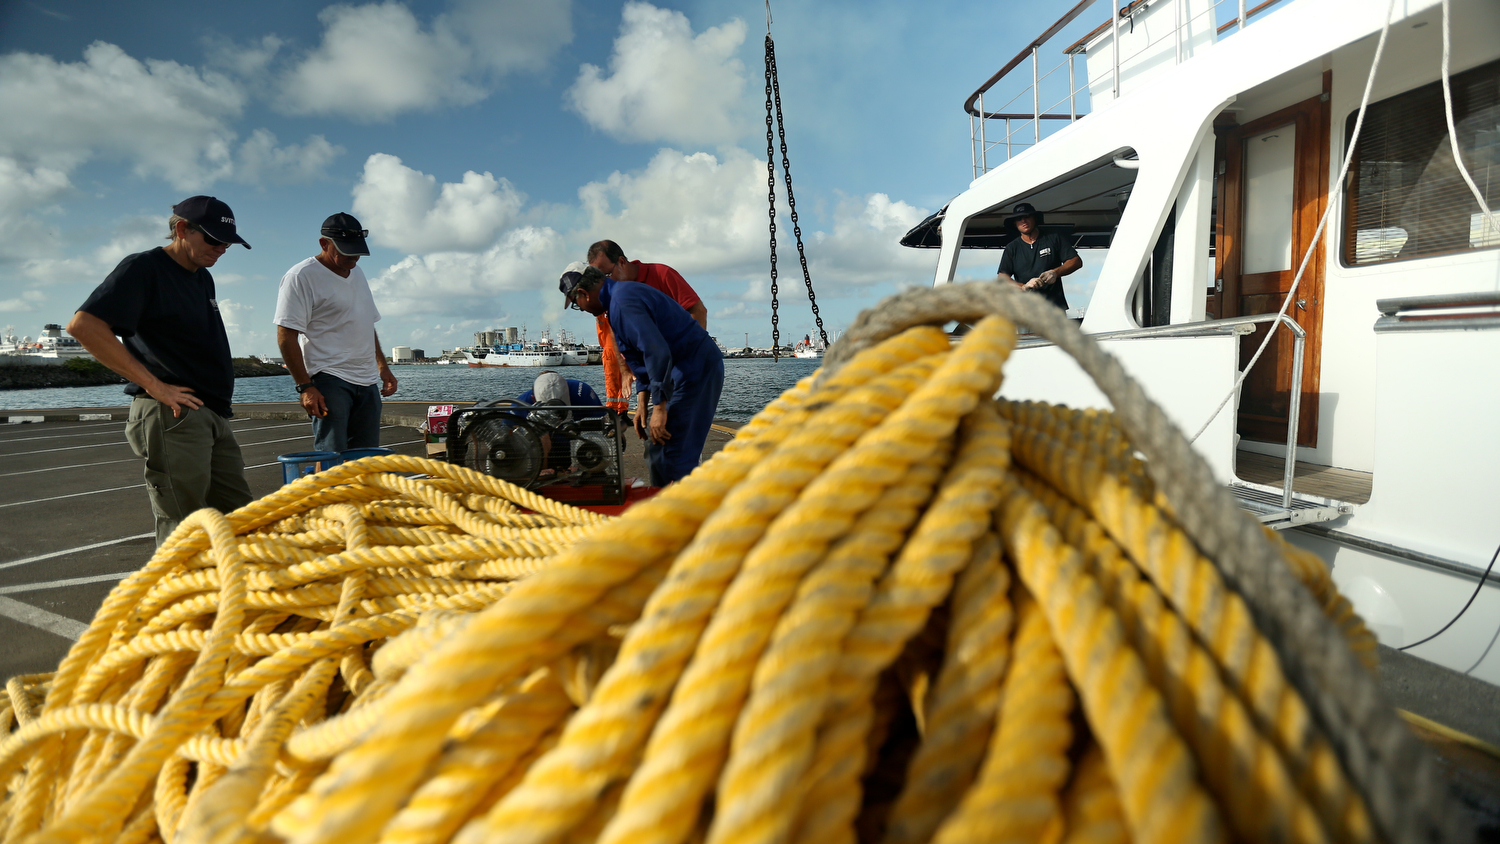 Equipe tenta recuperar todas as partes do barco (Foto Volvo Ocean Race)